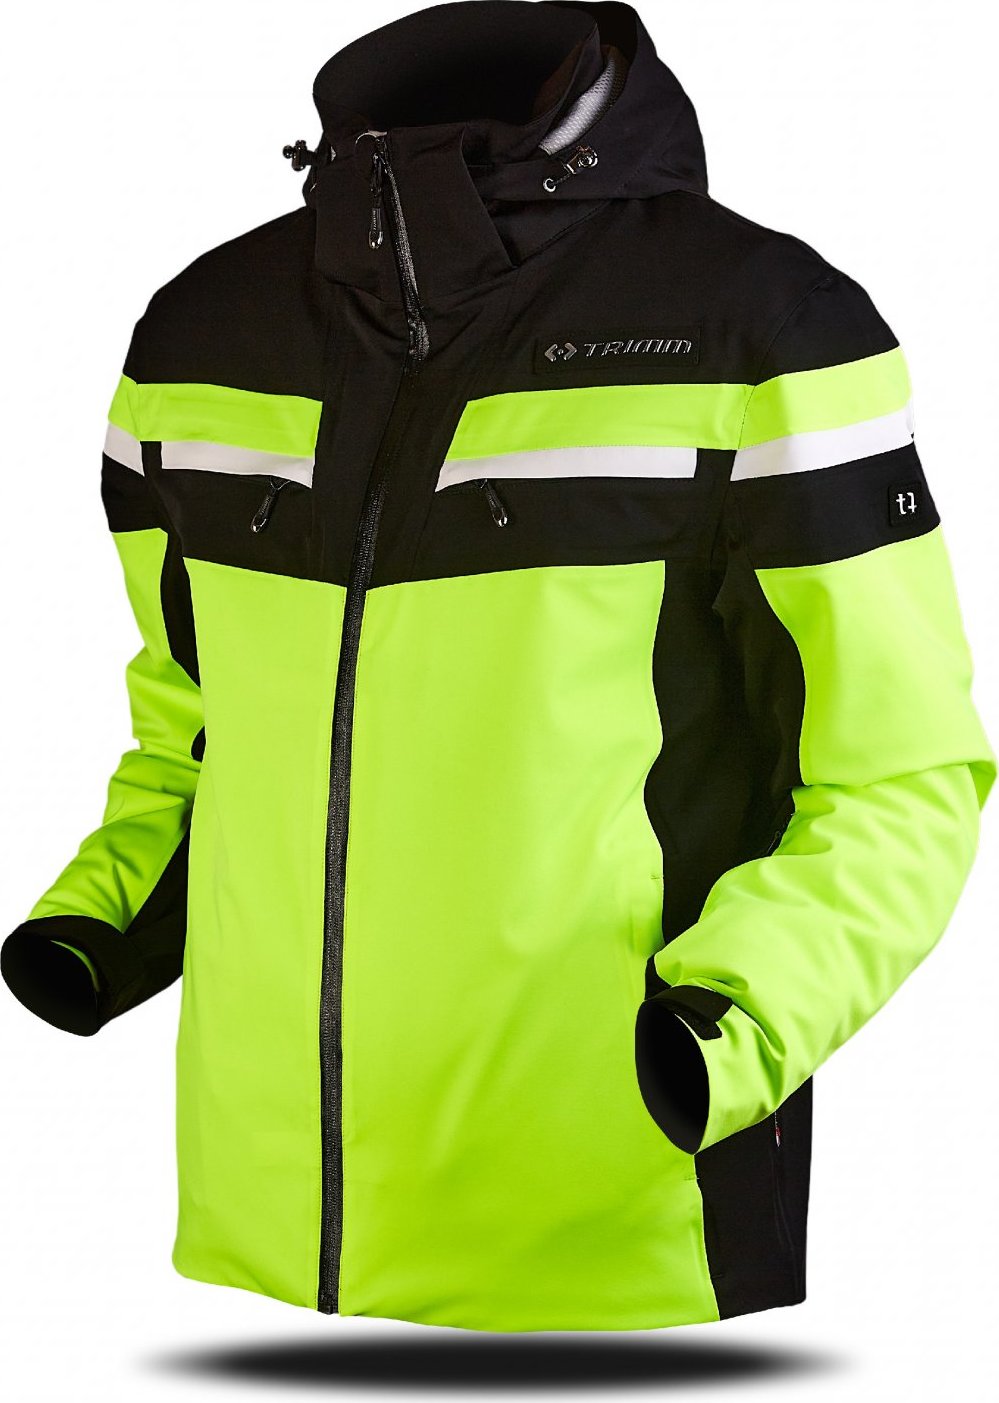 Pánská lyžařská bunda TRIMM Fusion žlutá Velikost: XL, Barva: lemon/black/white